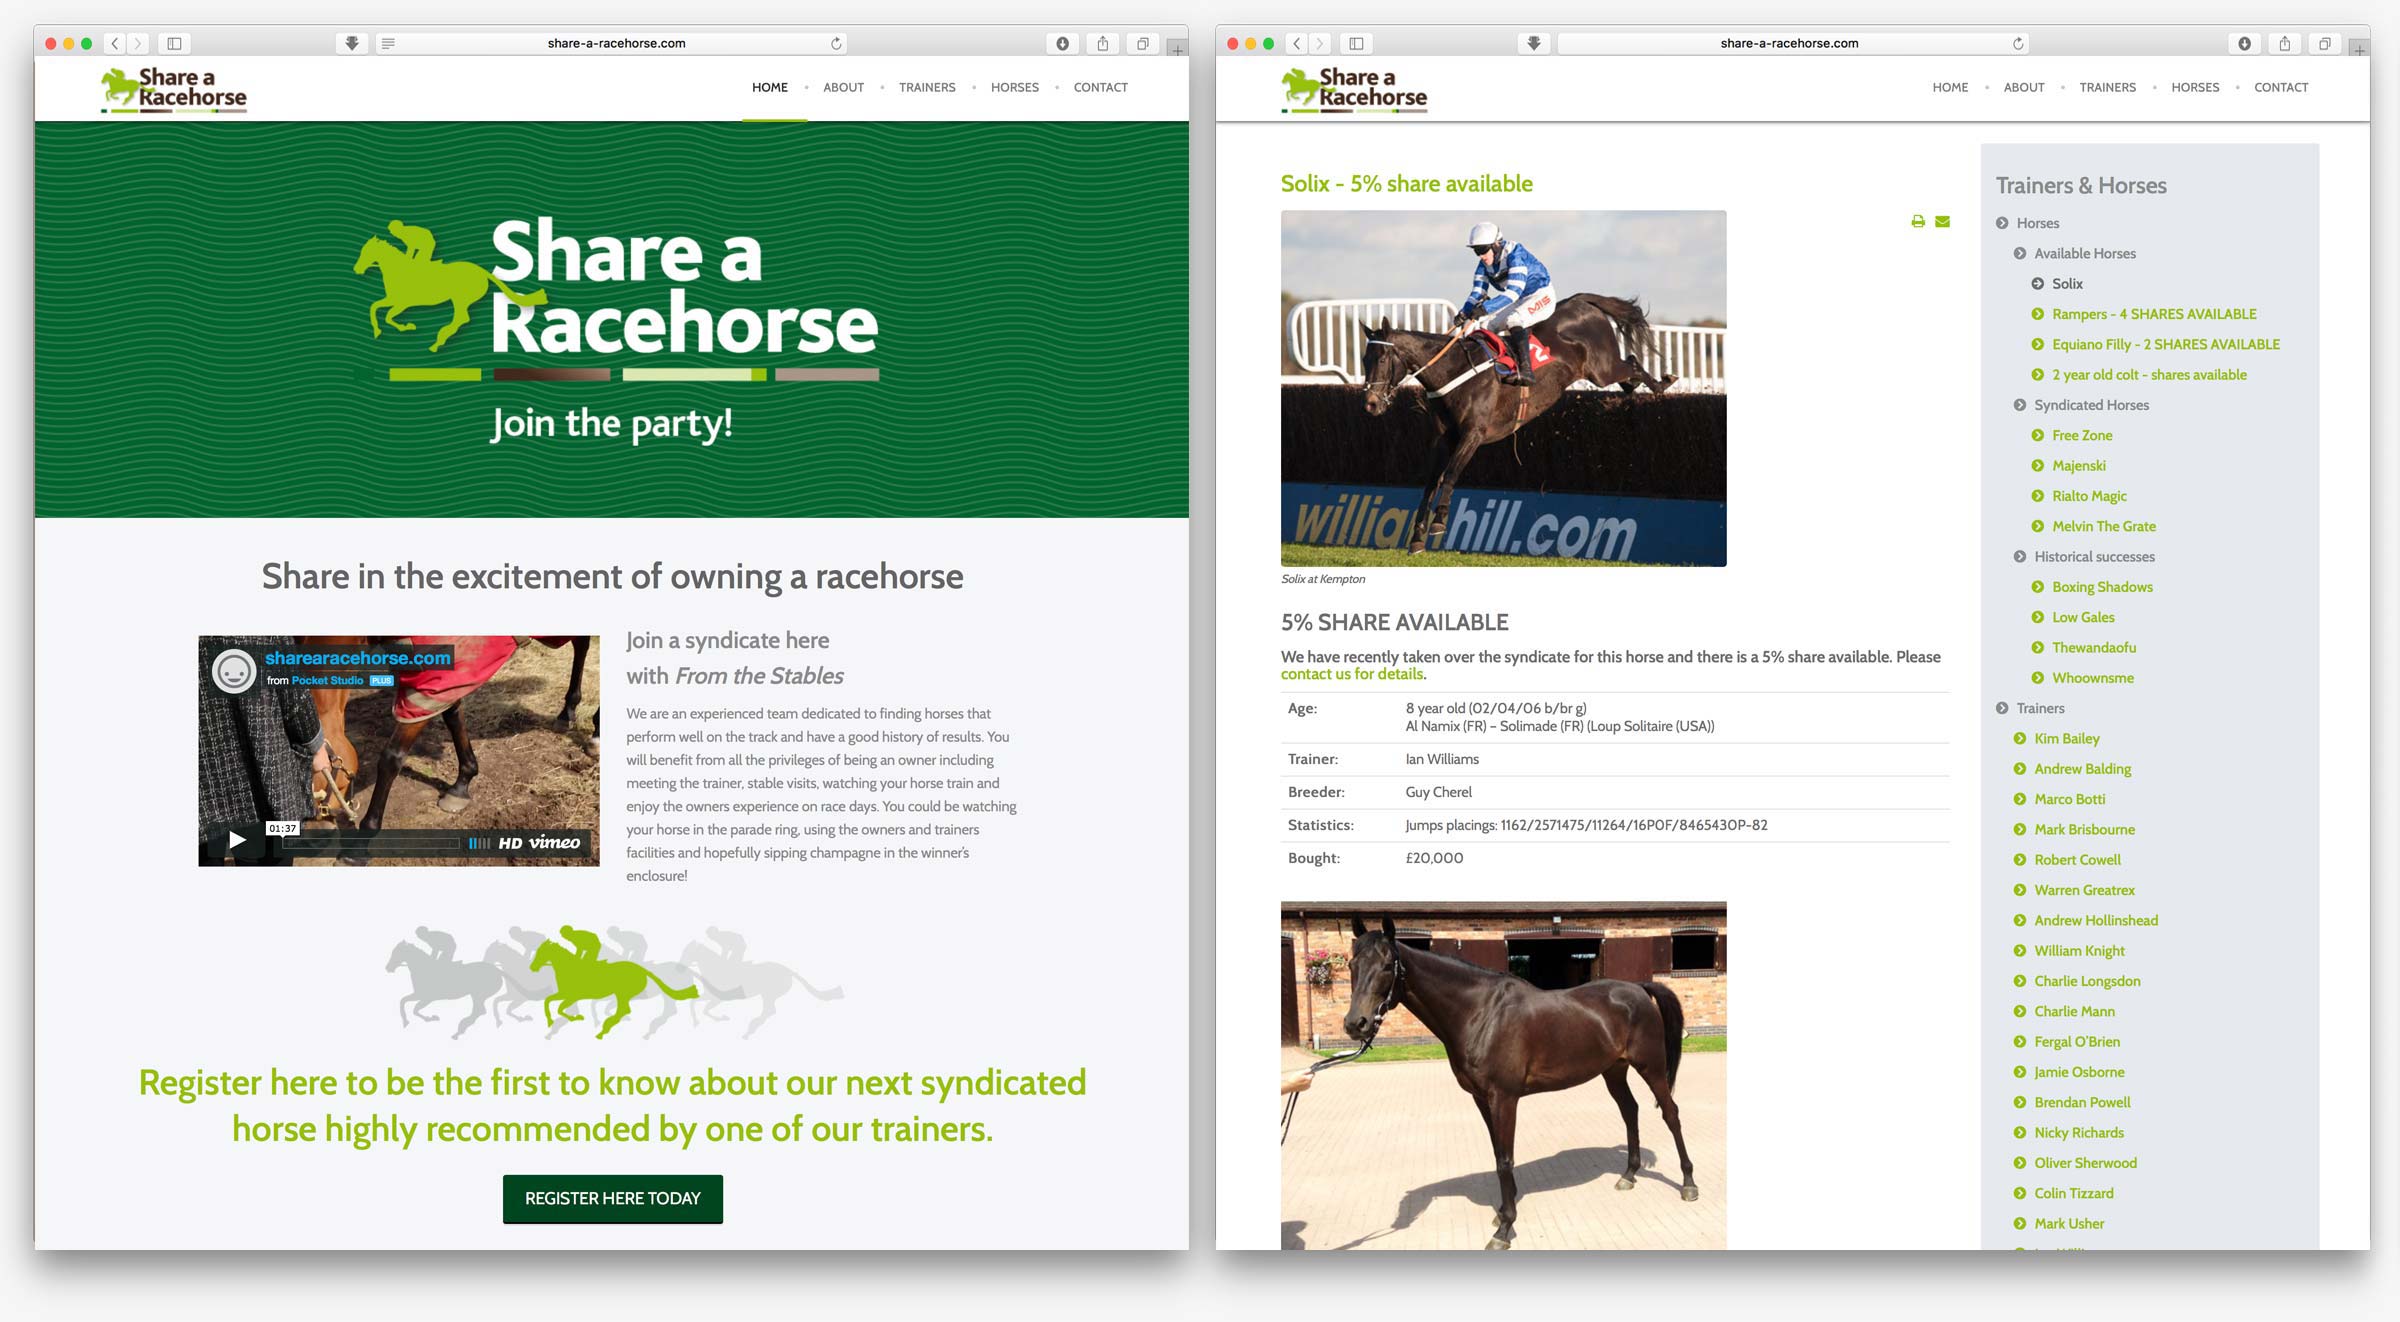 Share a Racehorse website